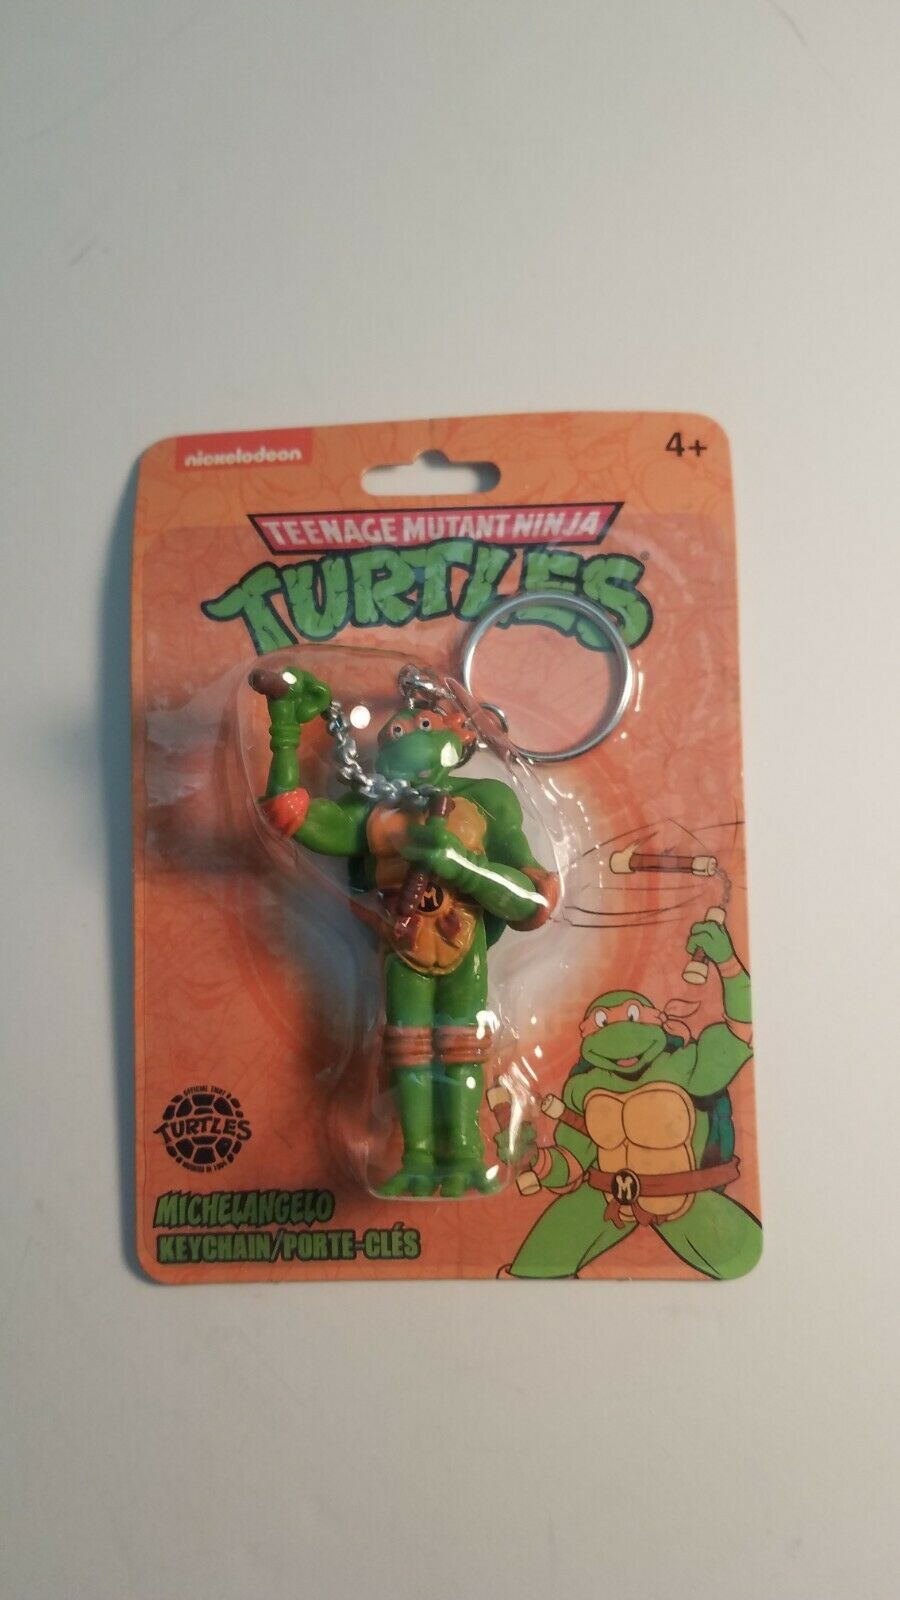 teenage mutant ninja turtles michelangelo keychain nickeldeon new in package - $8.50